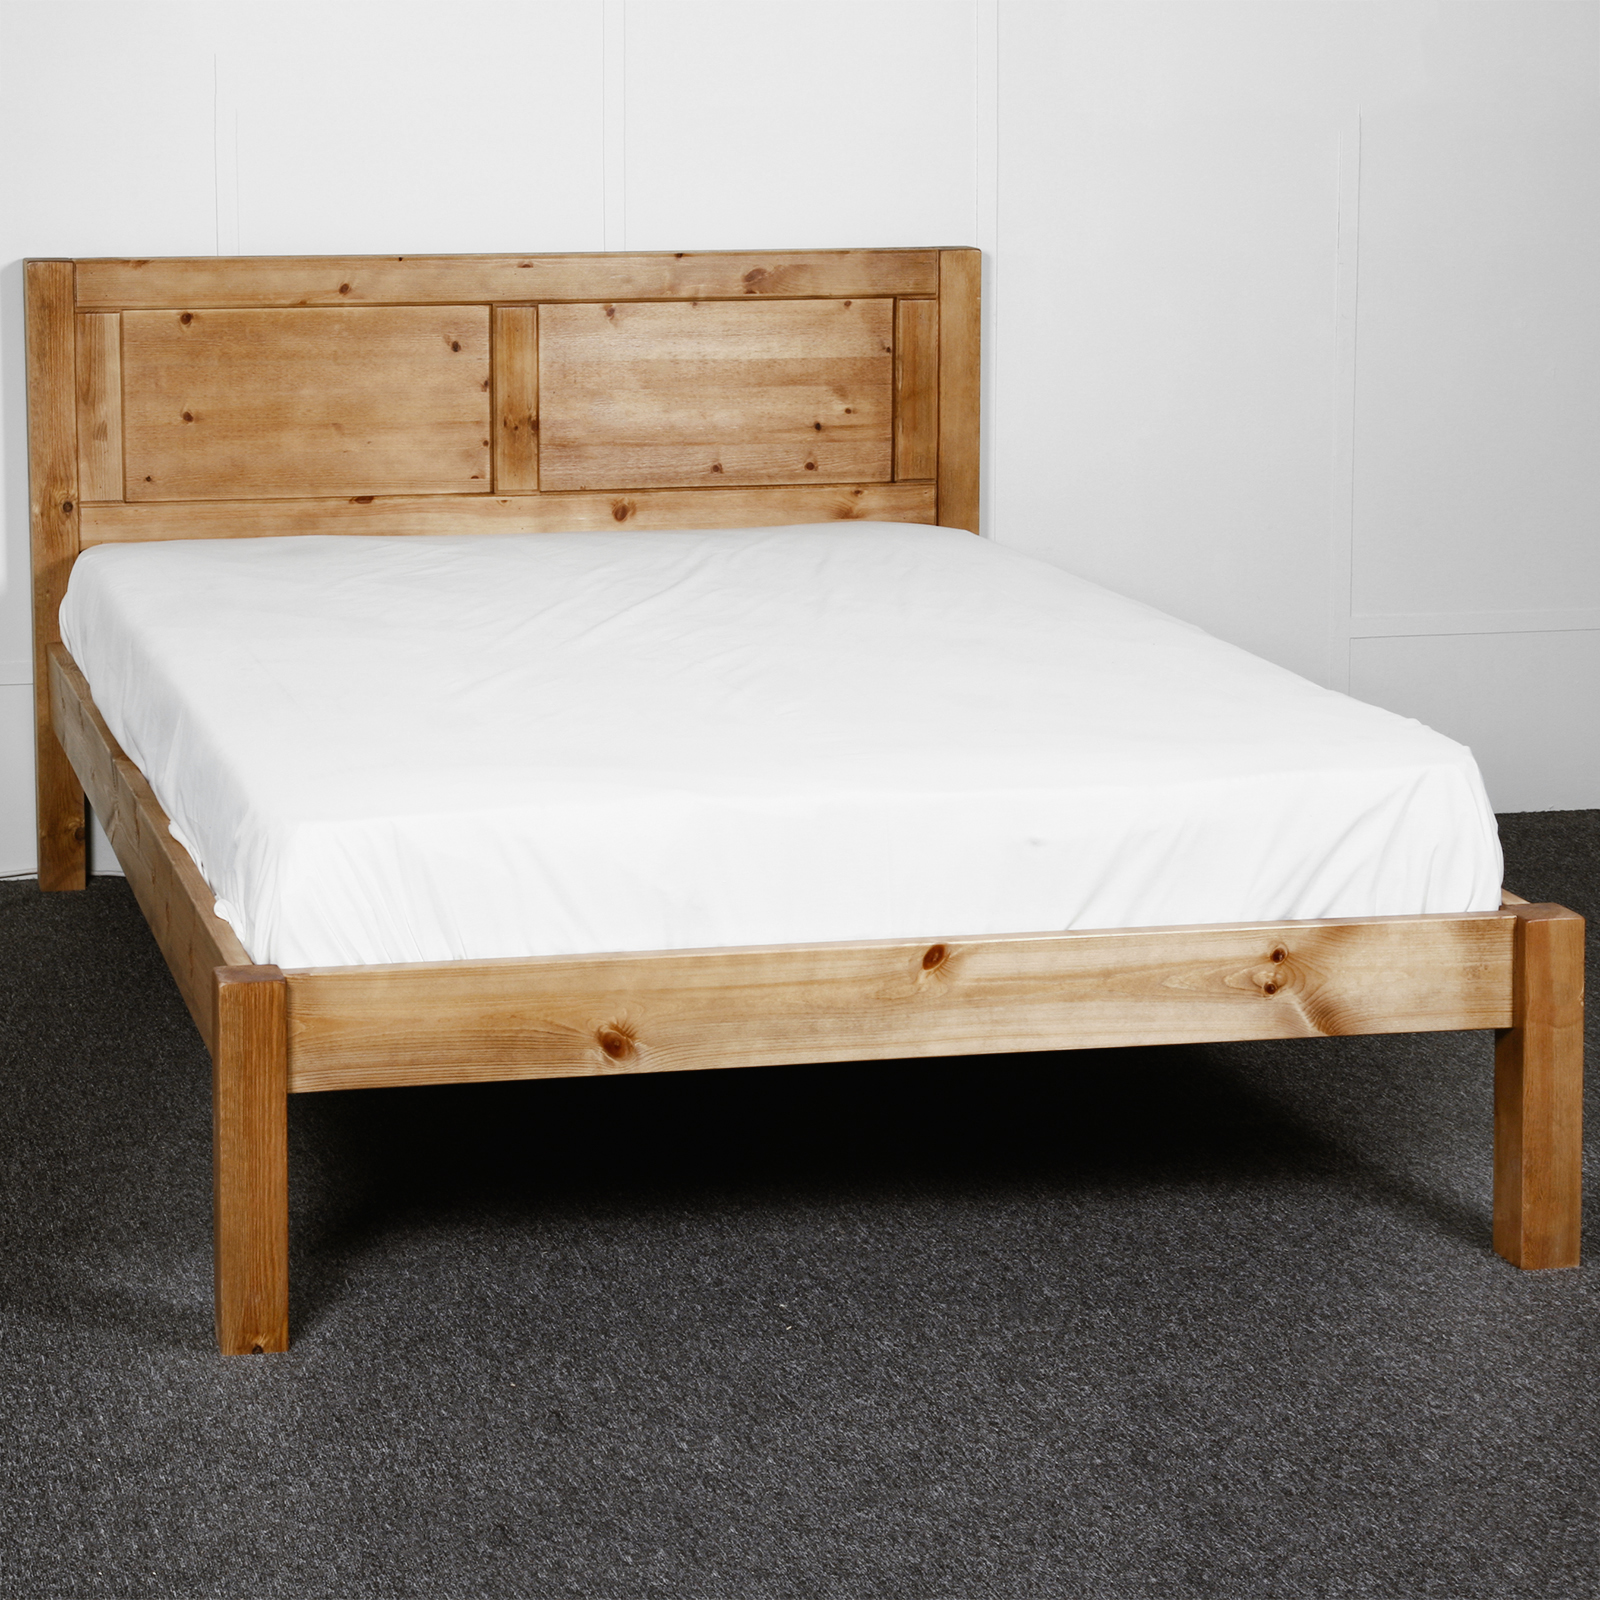 strong king size bed frame - 28 images - new king size platform bed